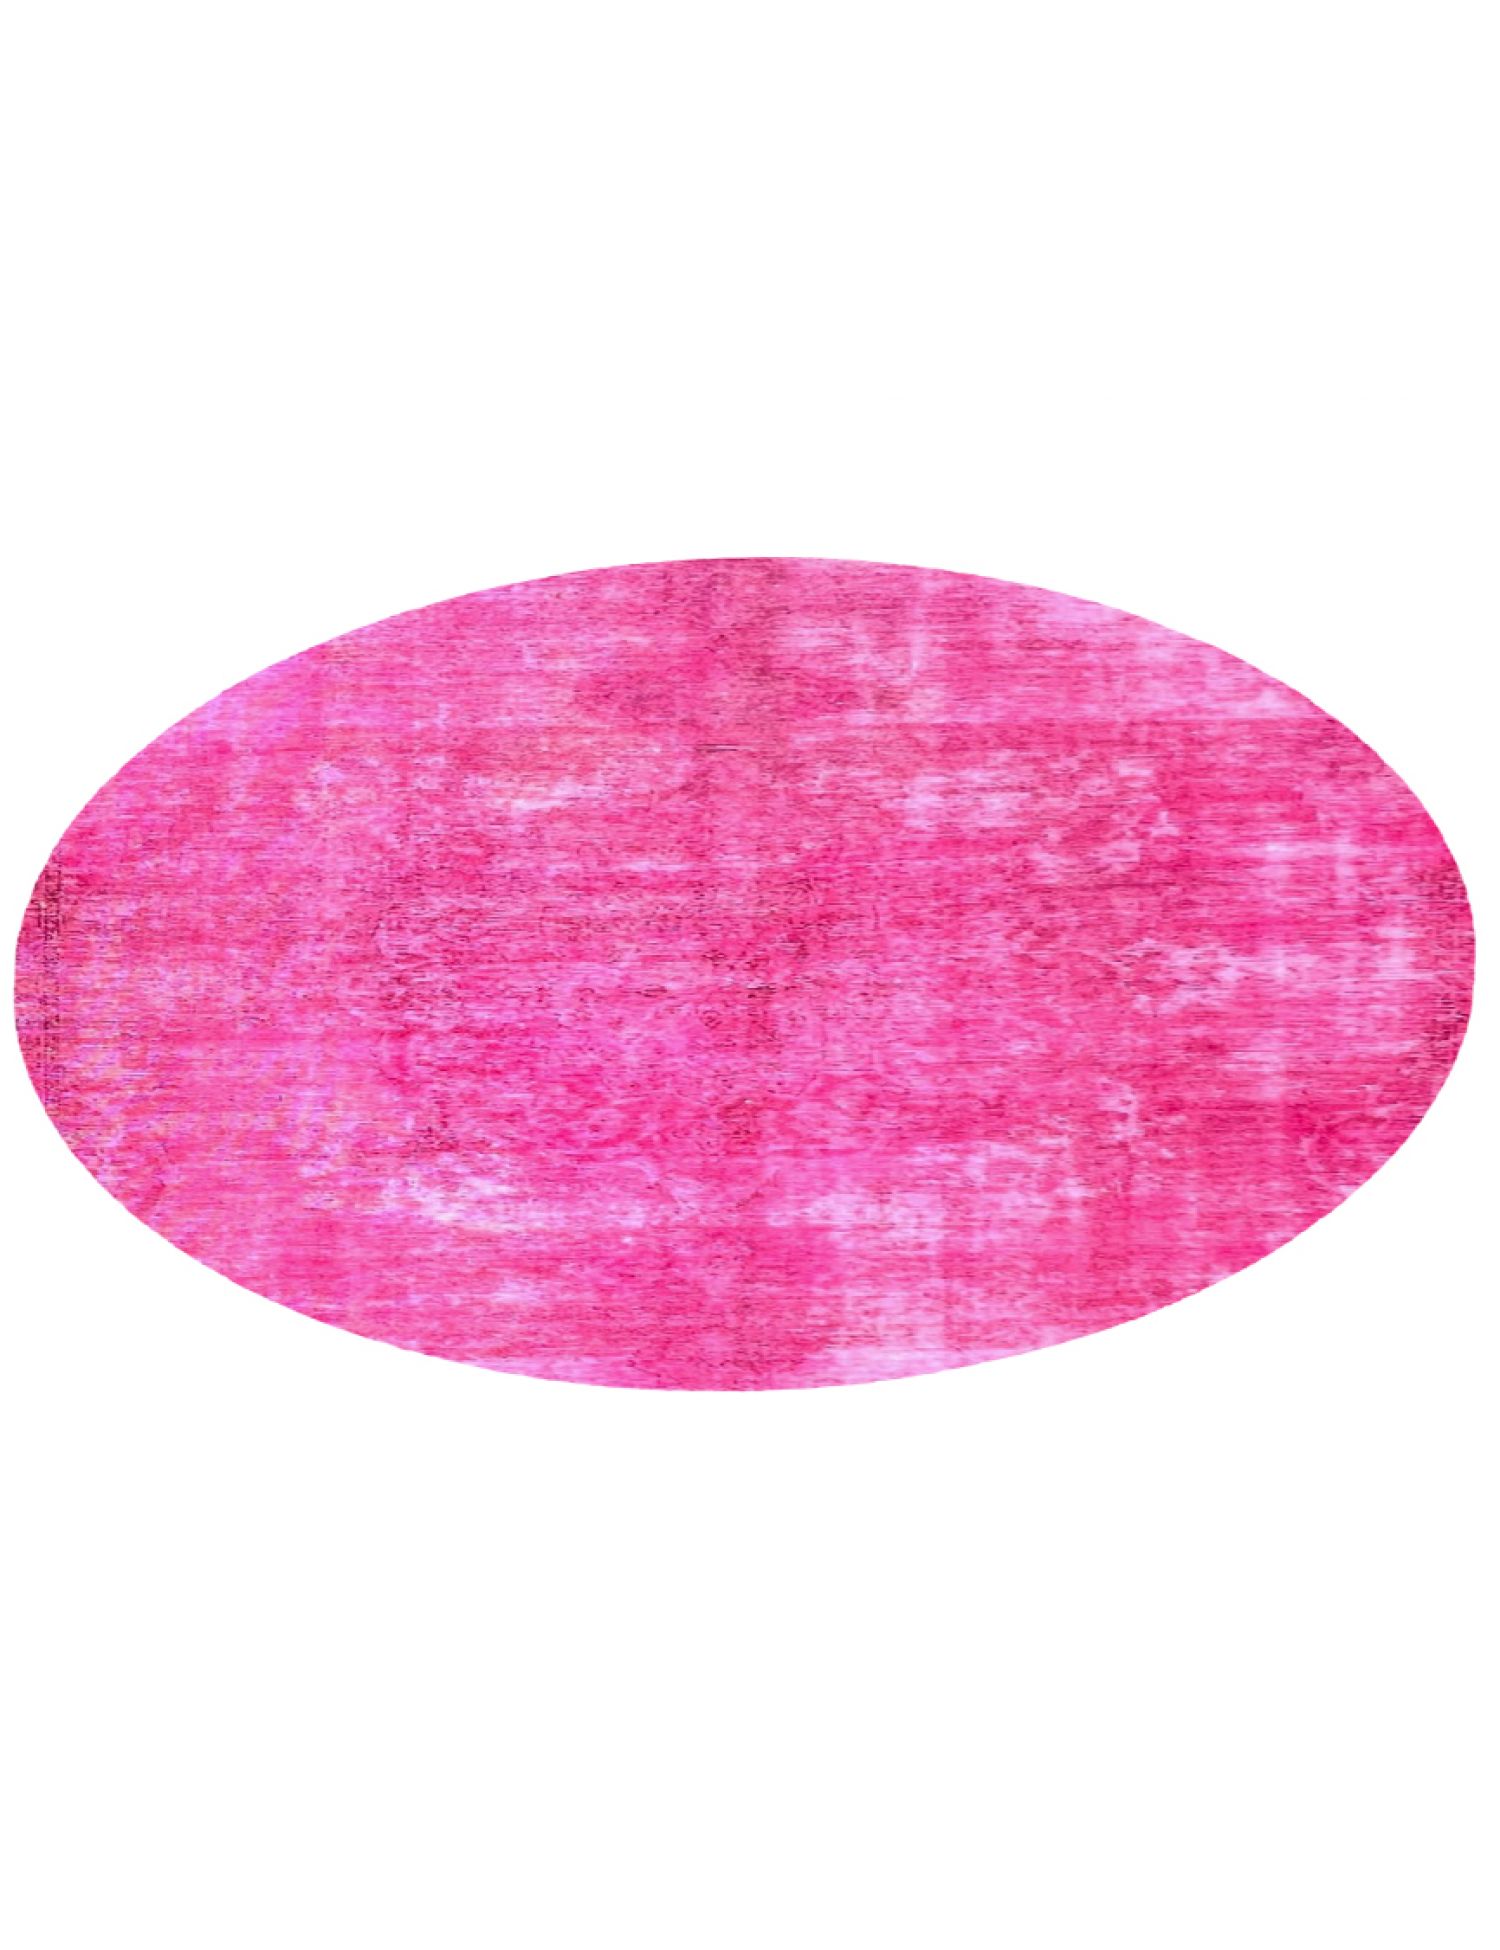 Vintage Teppich  rosa <br/>203 x 203 cm